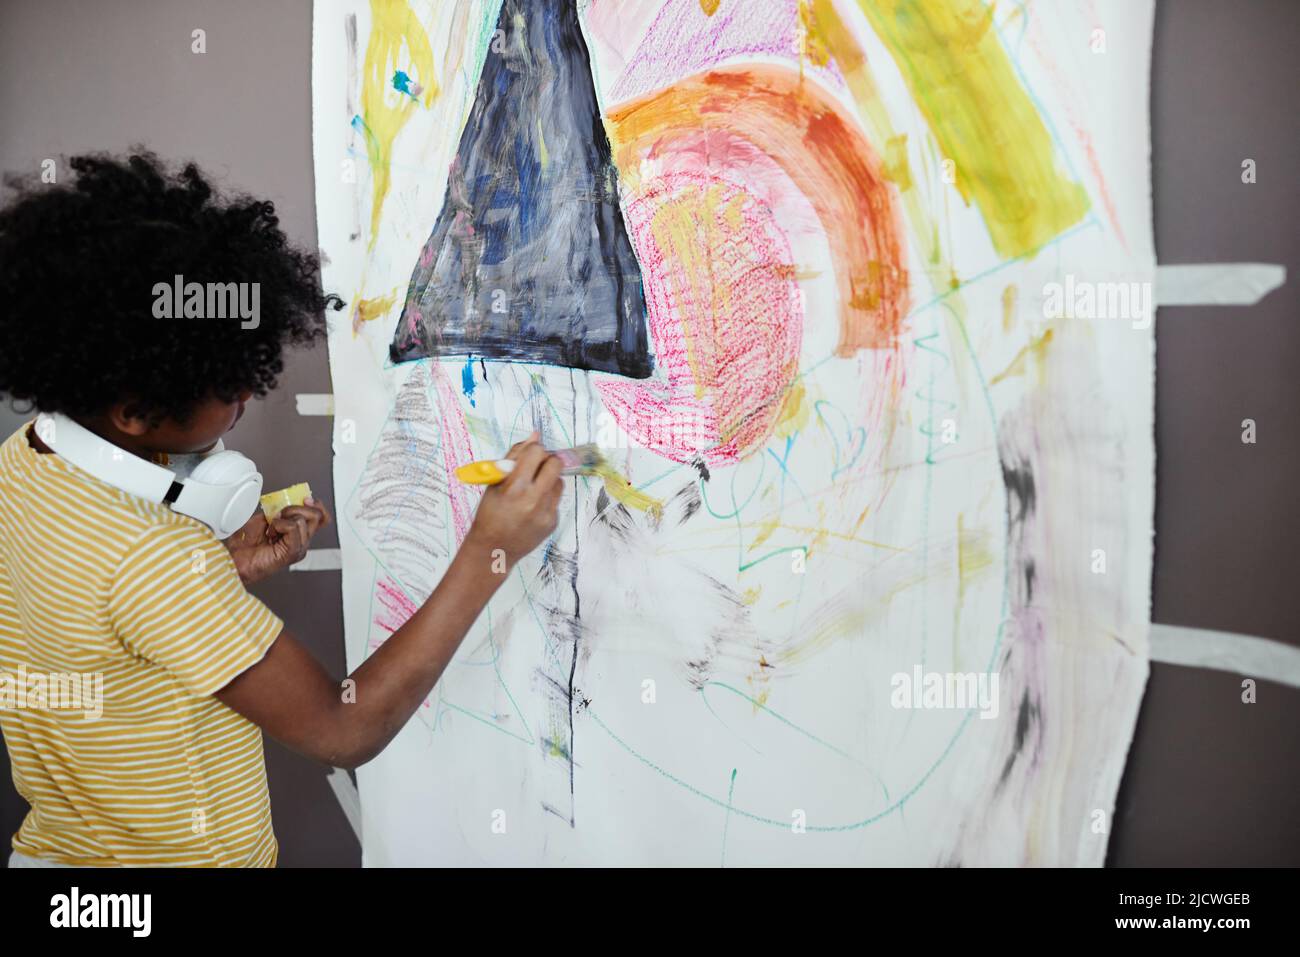 Ragazzino africano che usa il pastello giallo per disegnare un'immagine su carta grande appesa al muro Foto Stock